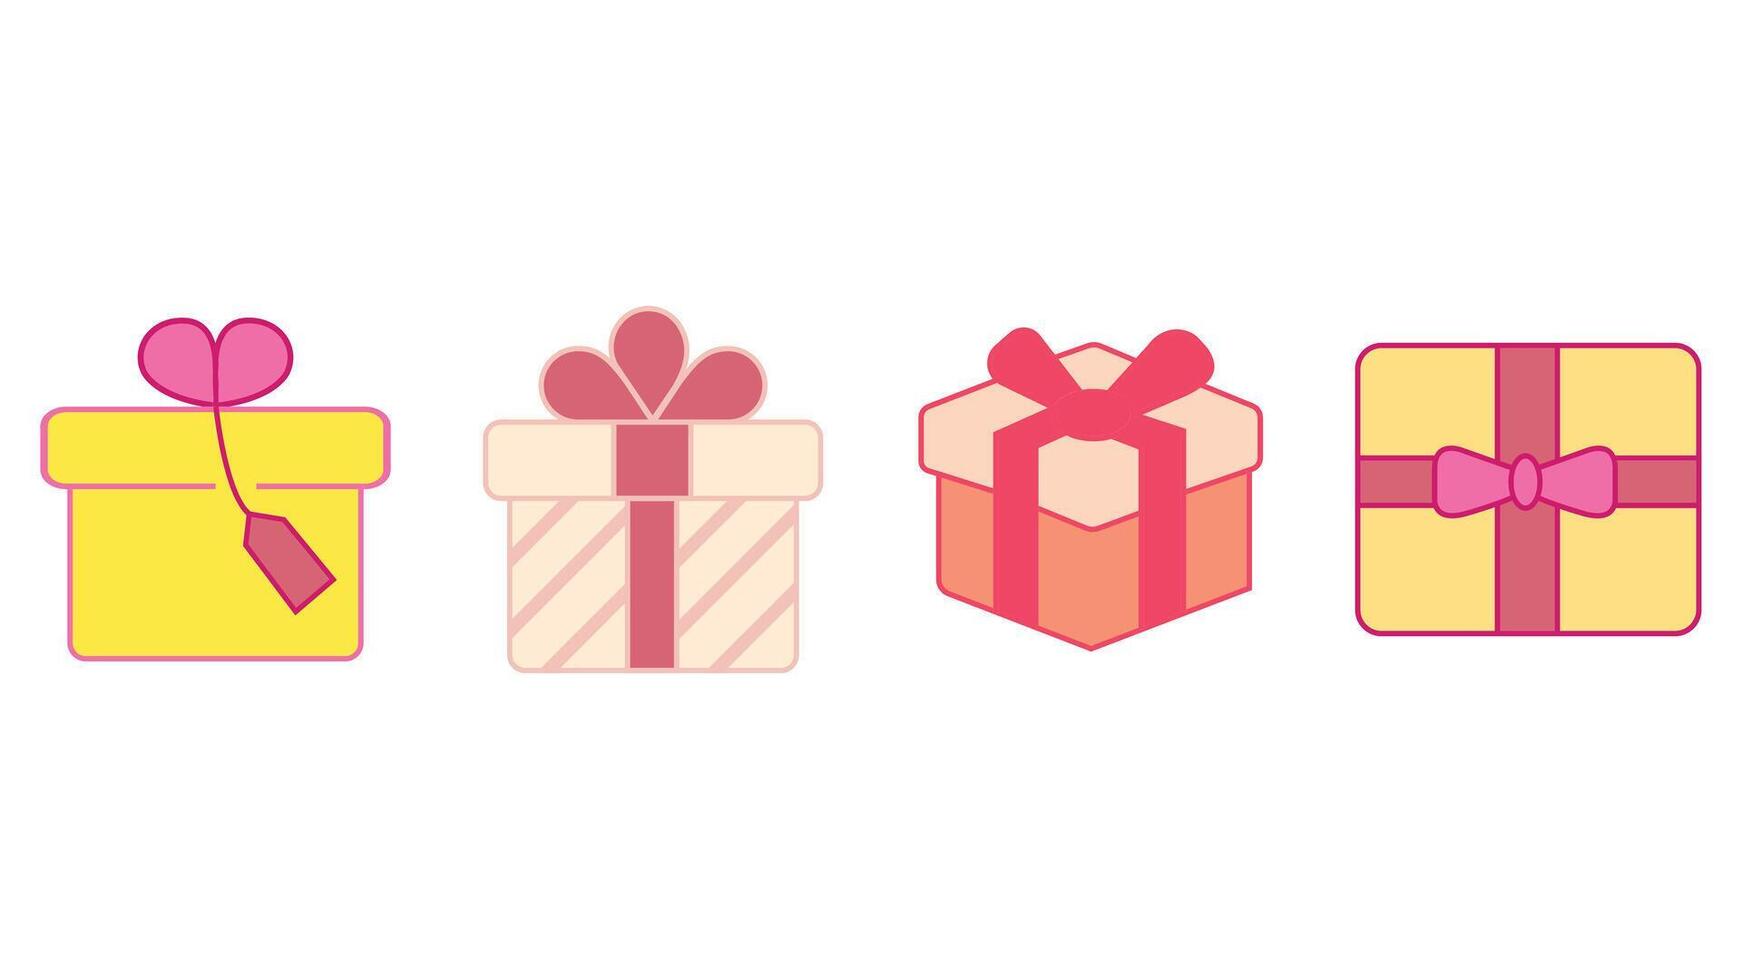 regalar, y regalo cajas para san valentin día vector icono conjunto